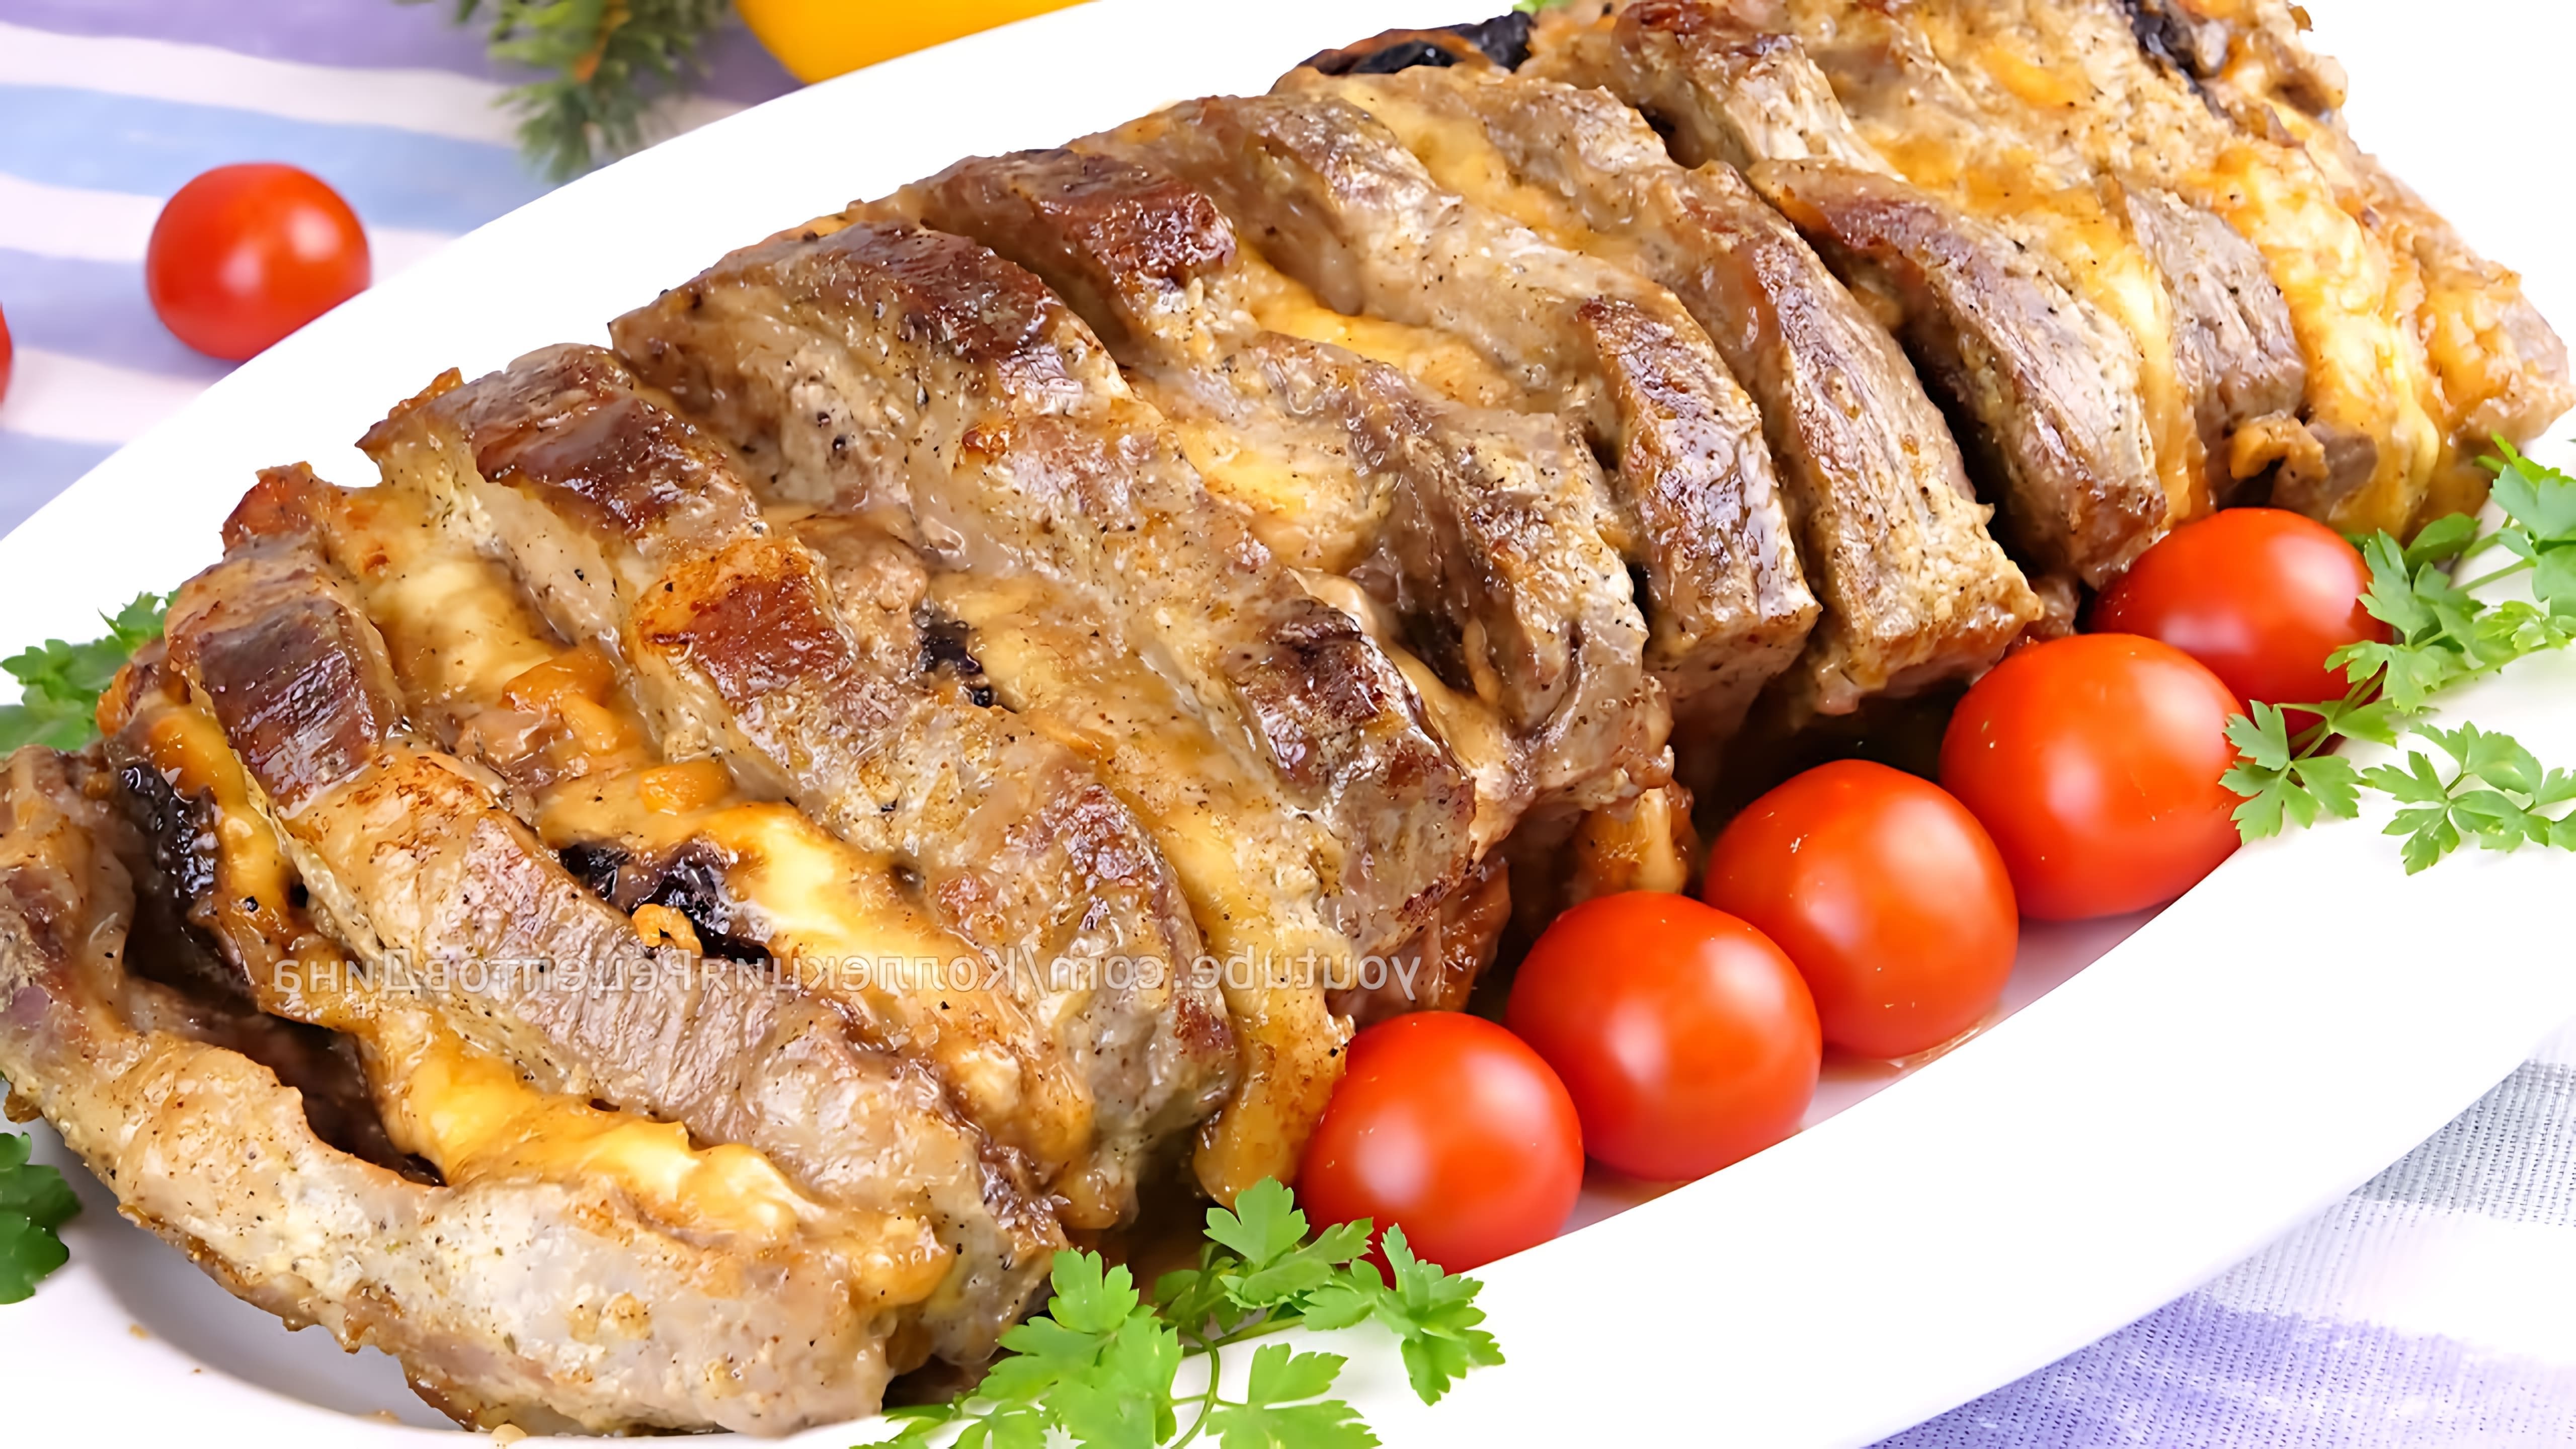 В этом видео демонстрируется рецепт праздничной мясной "Гармошки" с черносливом и курагой